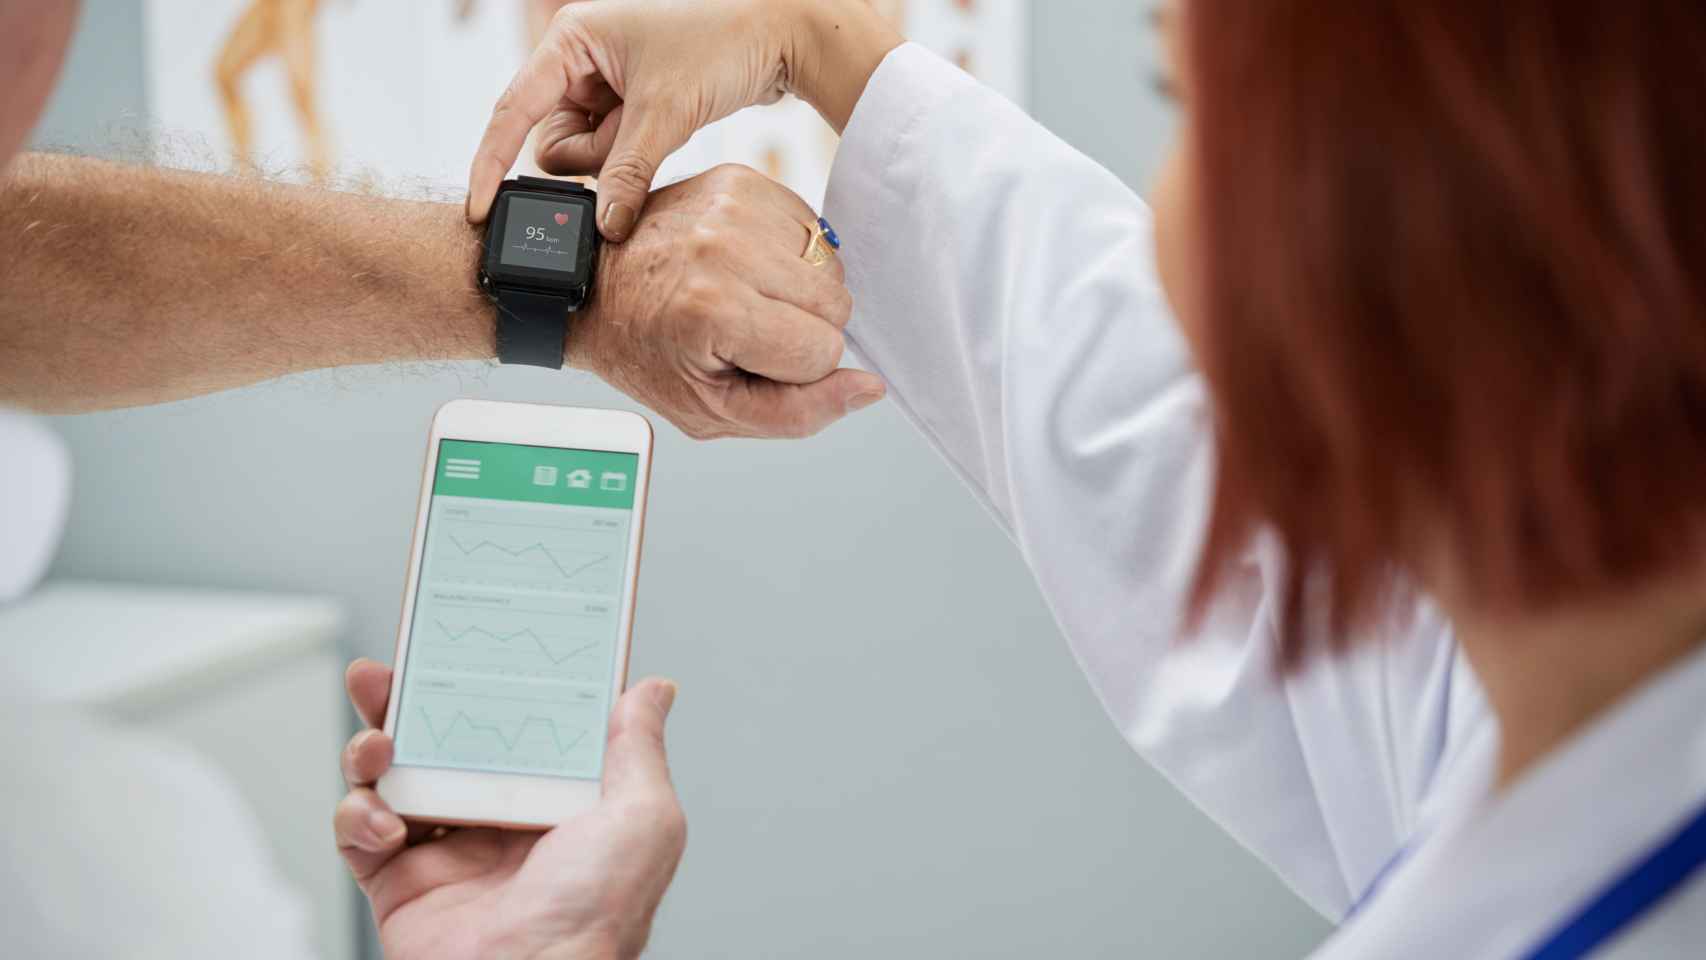 Consulta médica con smartwatch